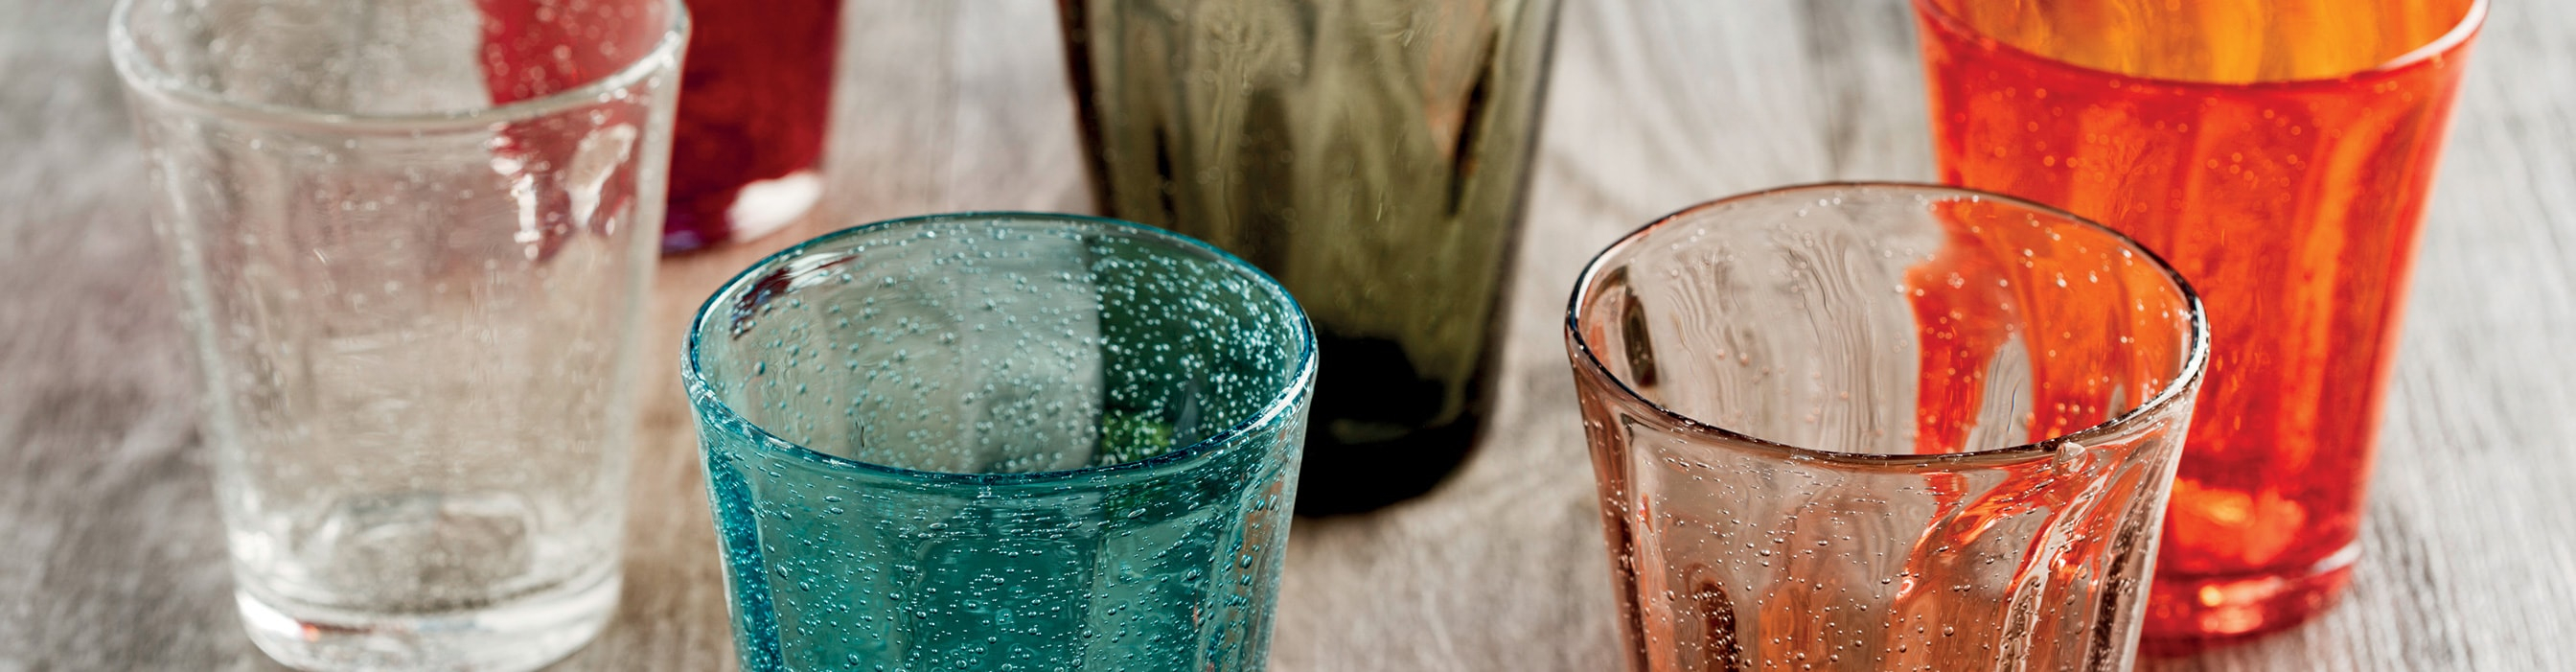 Bicchieri per acqua e vino per Ristoranti, Alberghi, Bar - Tognana